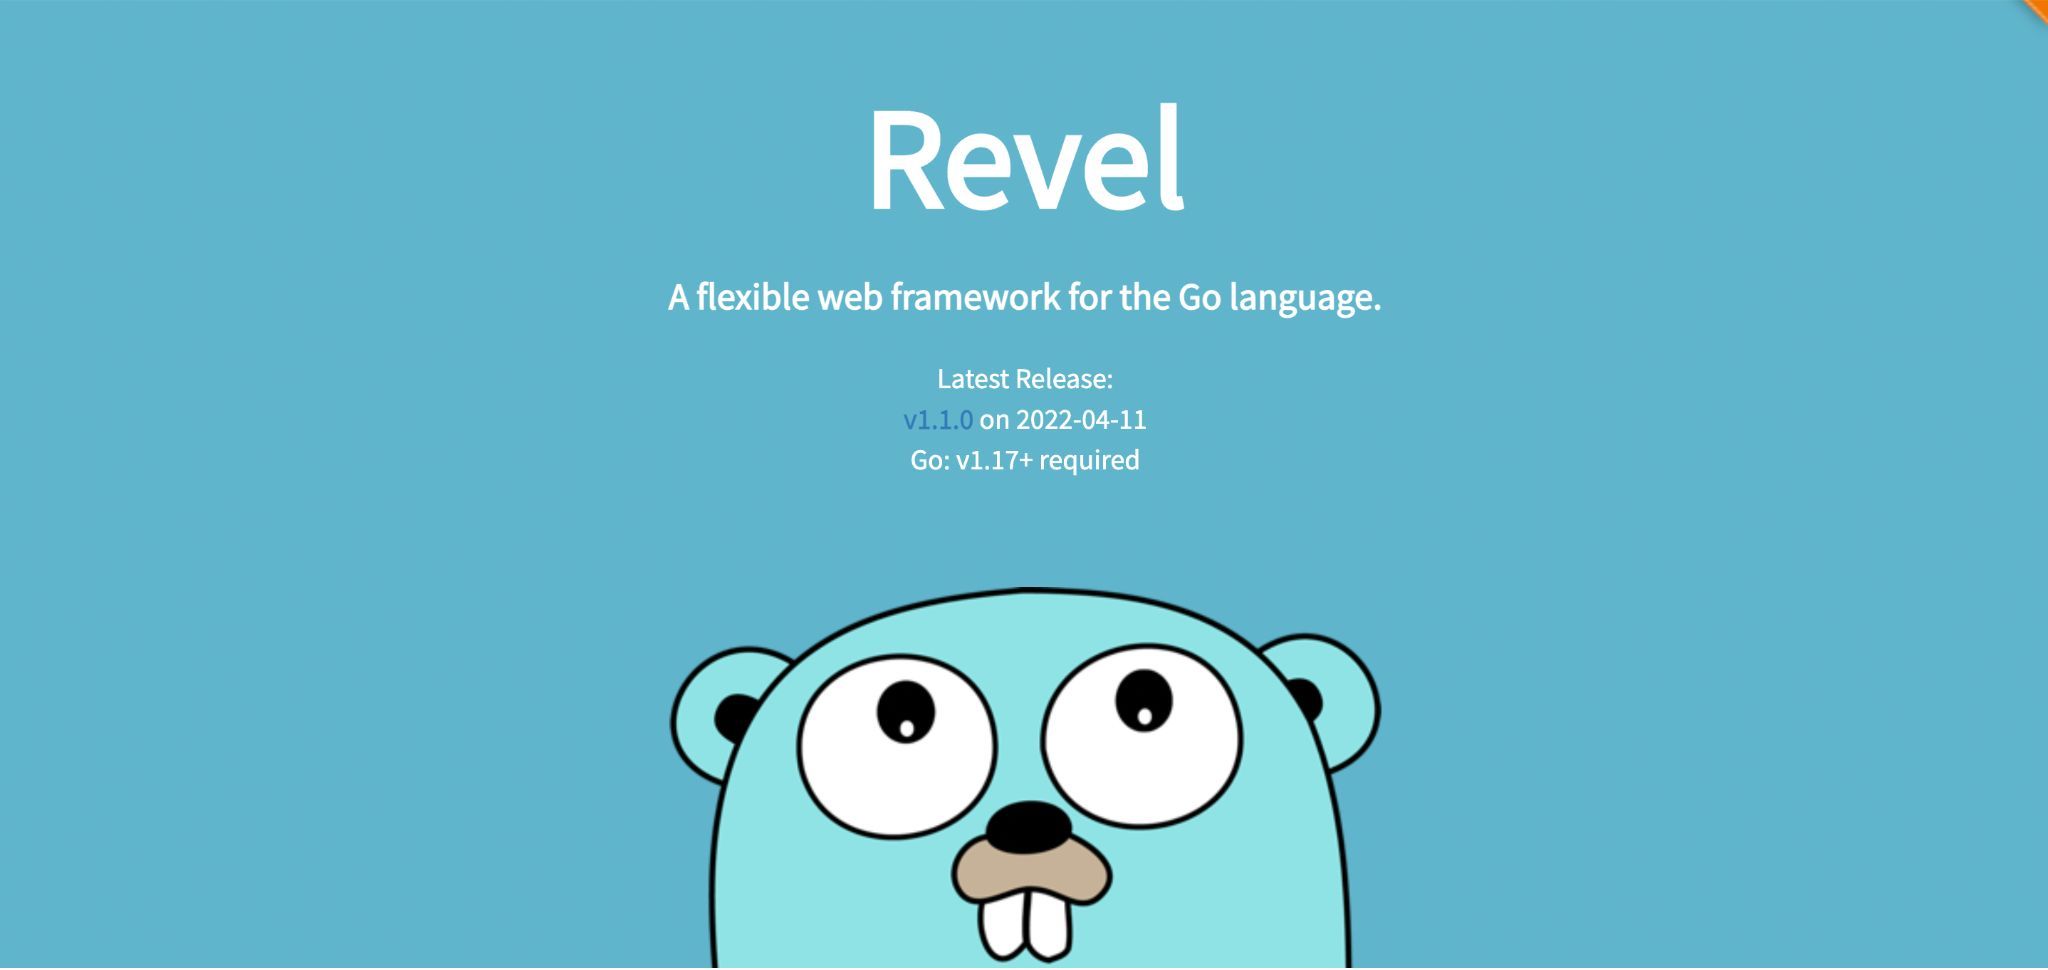 Revel framework homepage